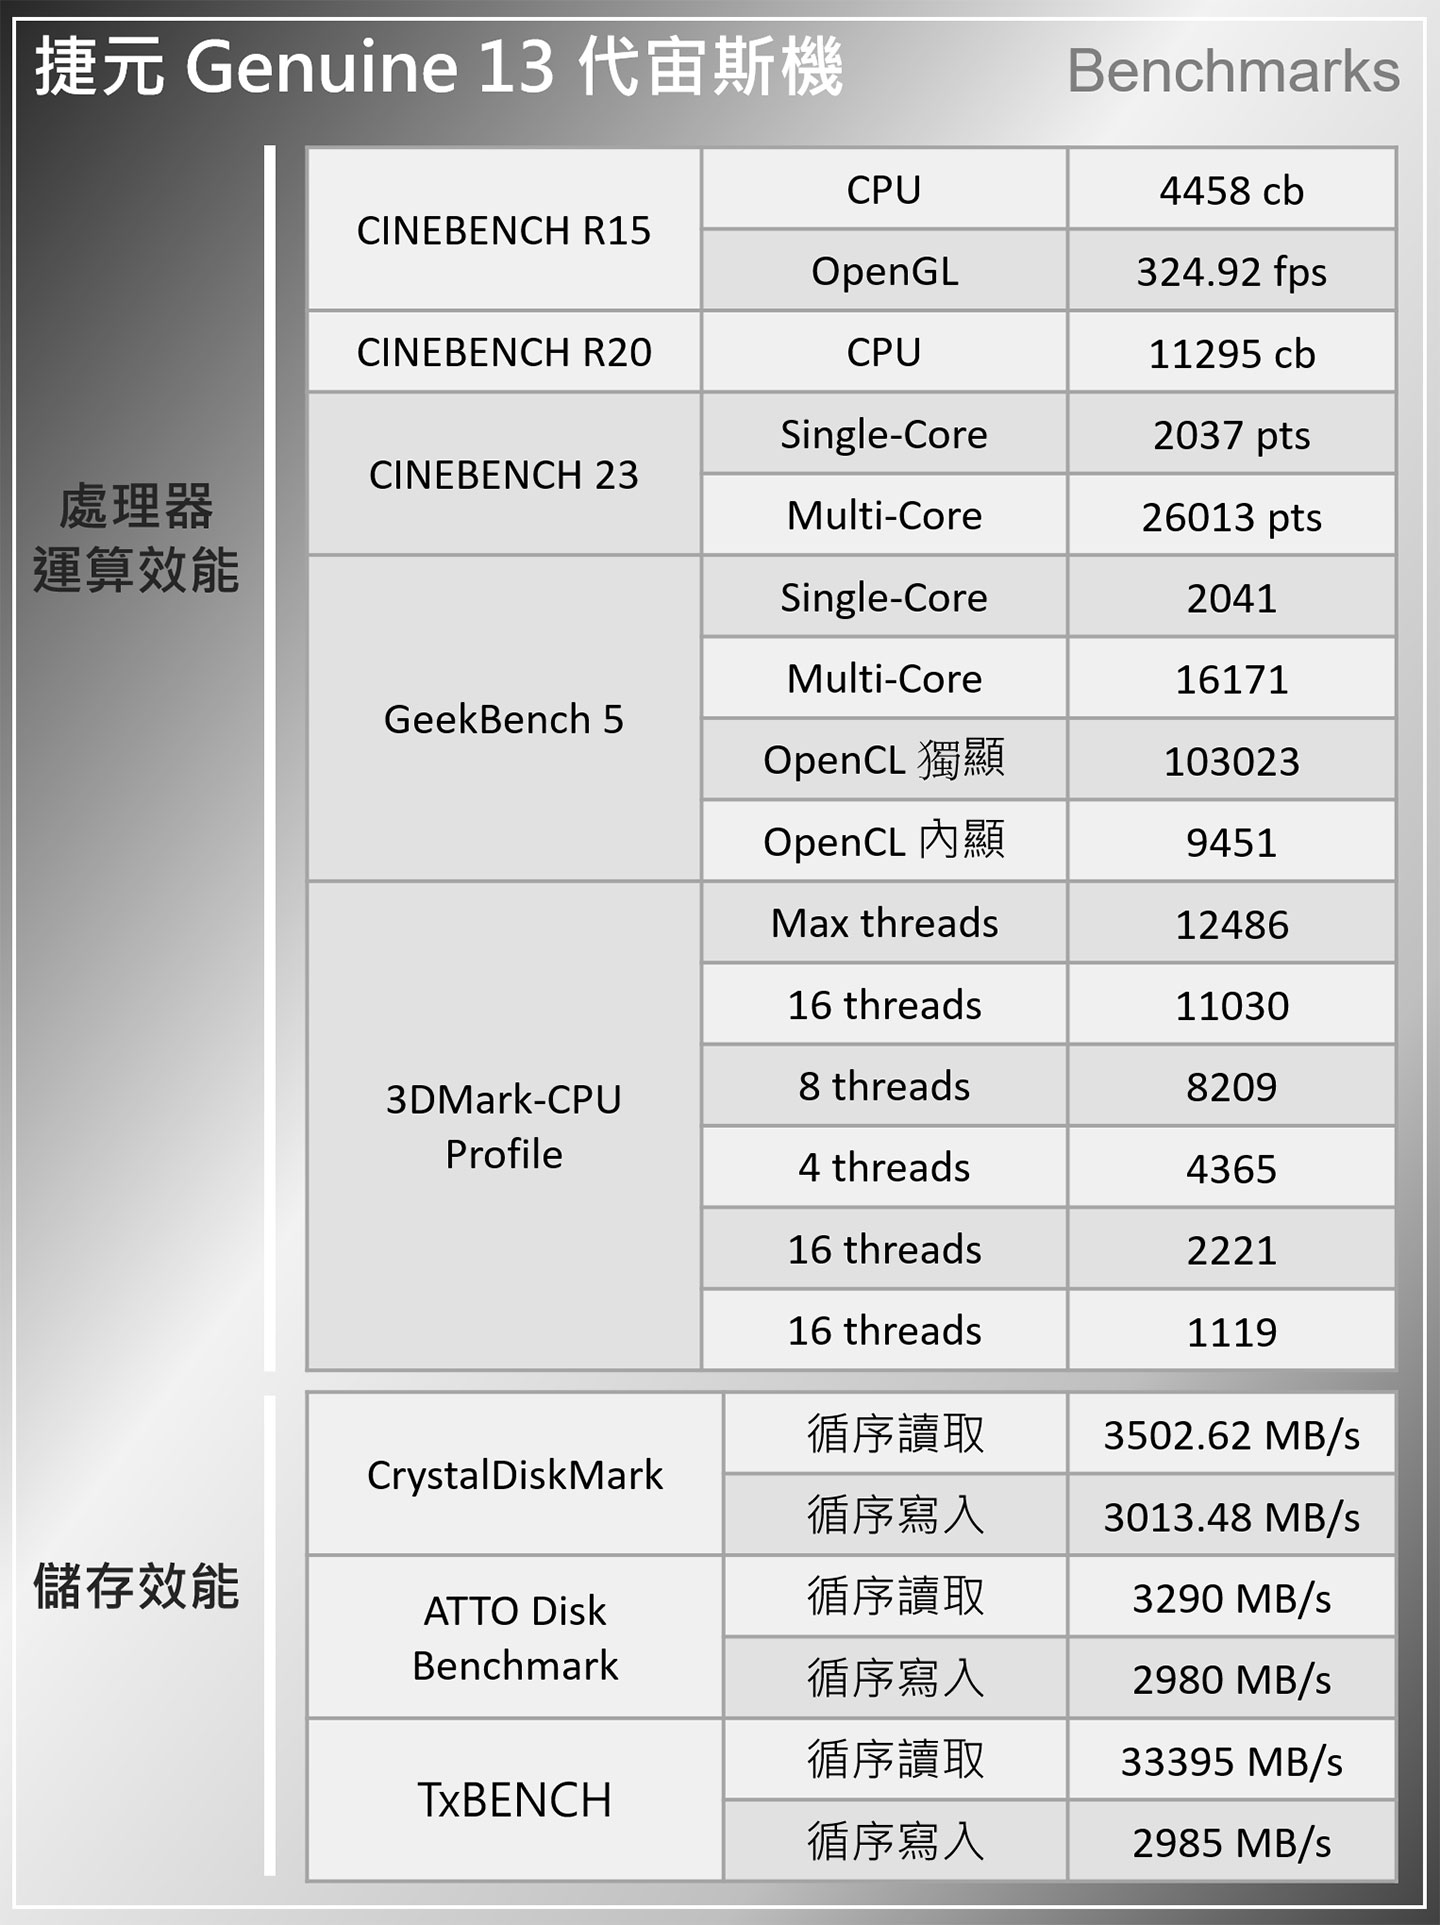 捷元 Genuine 13 代宙斯機強襲！升級第 13 代 Intel Core 系列處理器，搭配主流規格更能輕鬆入手～捷元 BTO 服務帶來 DIY 彈性，保固更無後顧之憂！